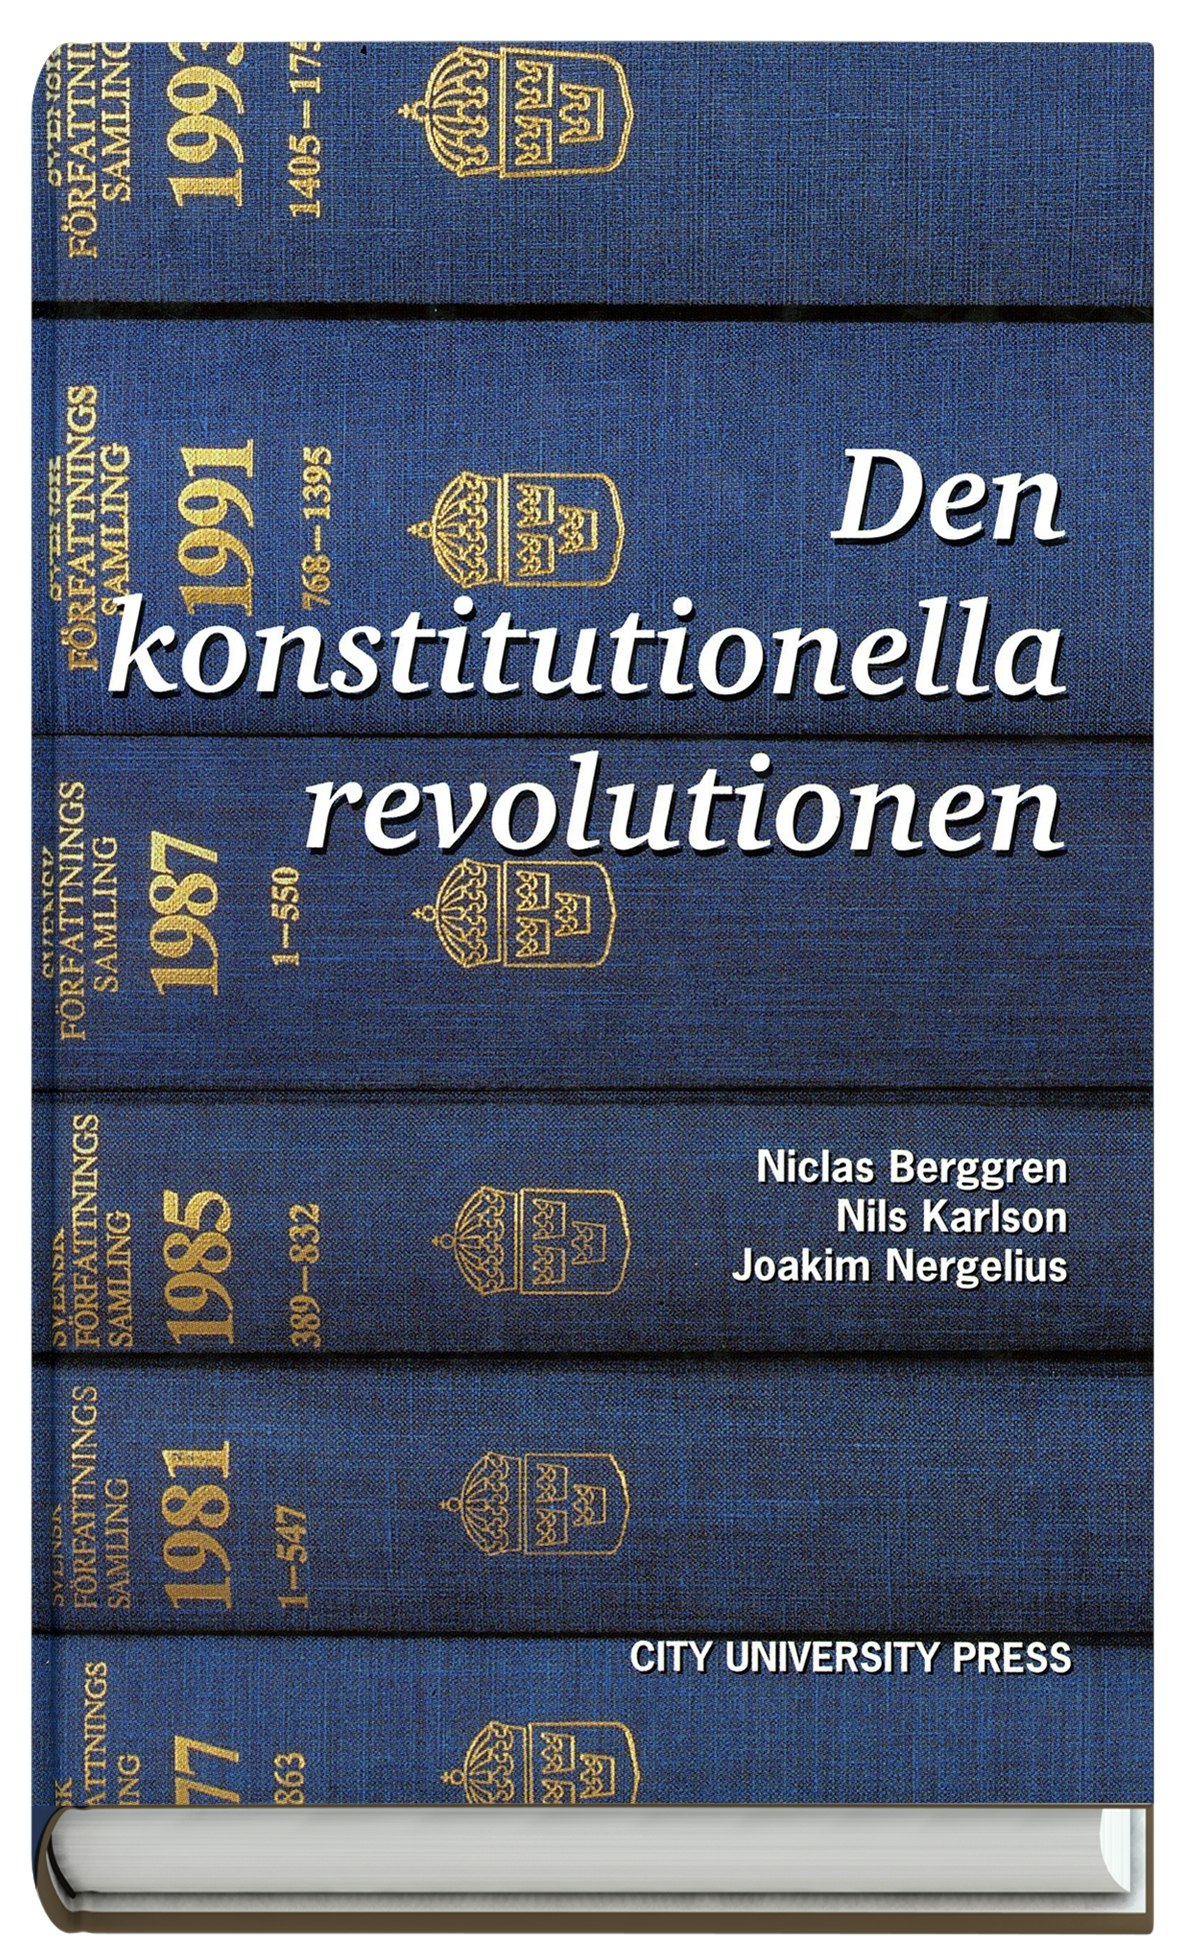 Den konstitutionella revolutionen